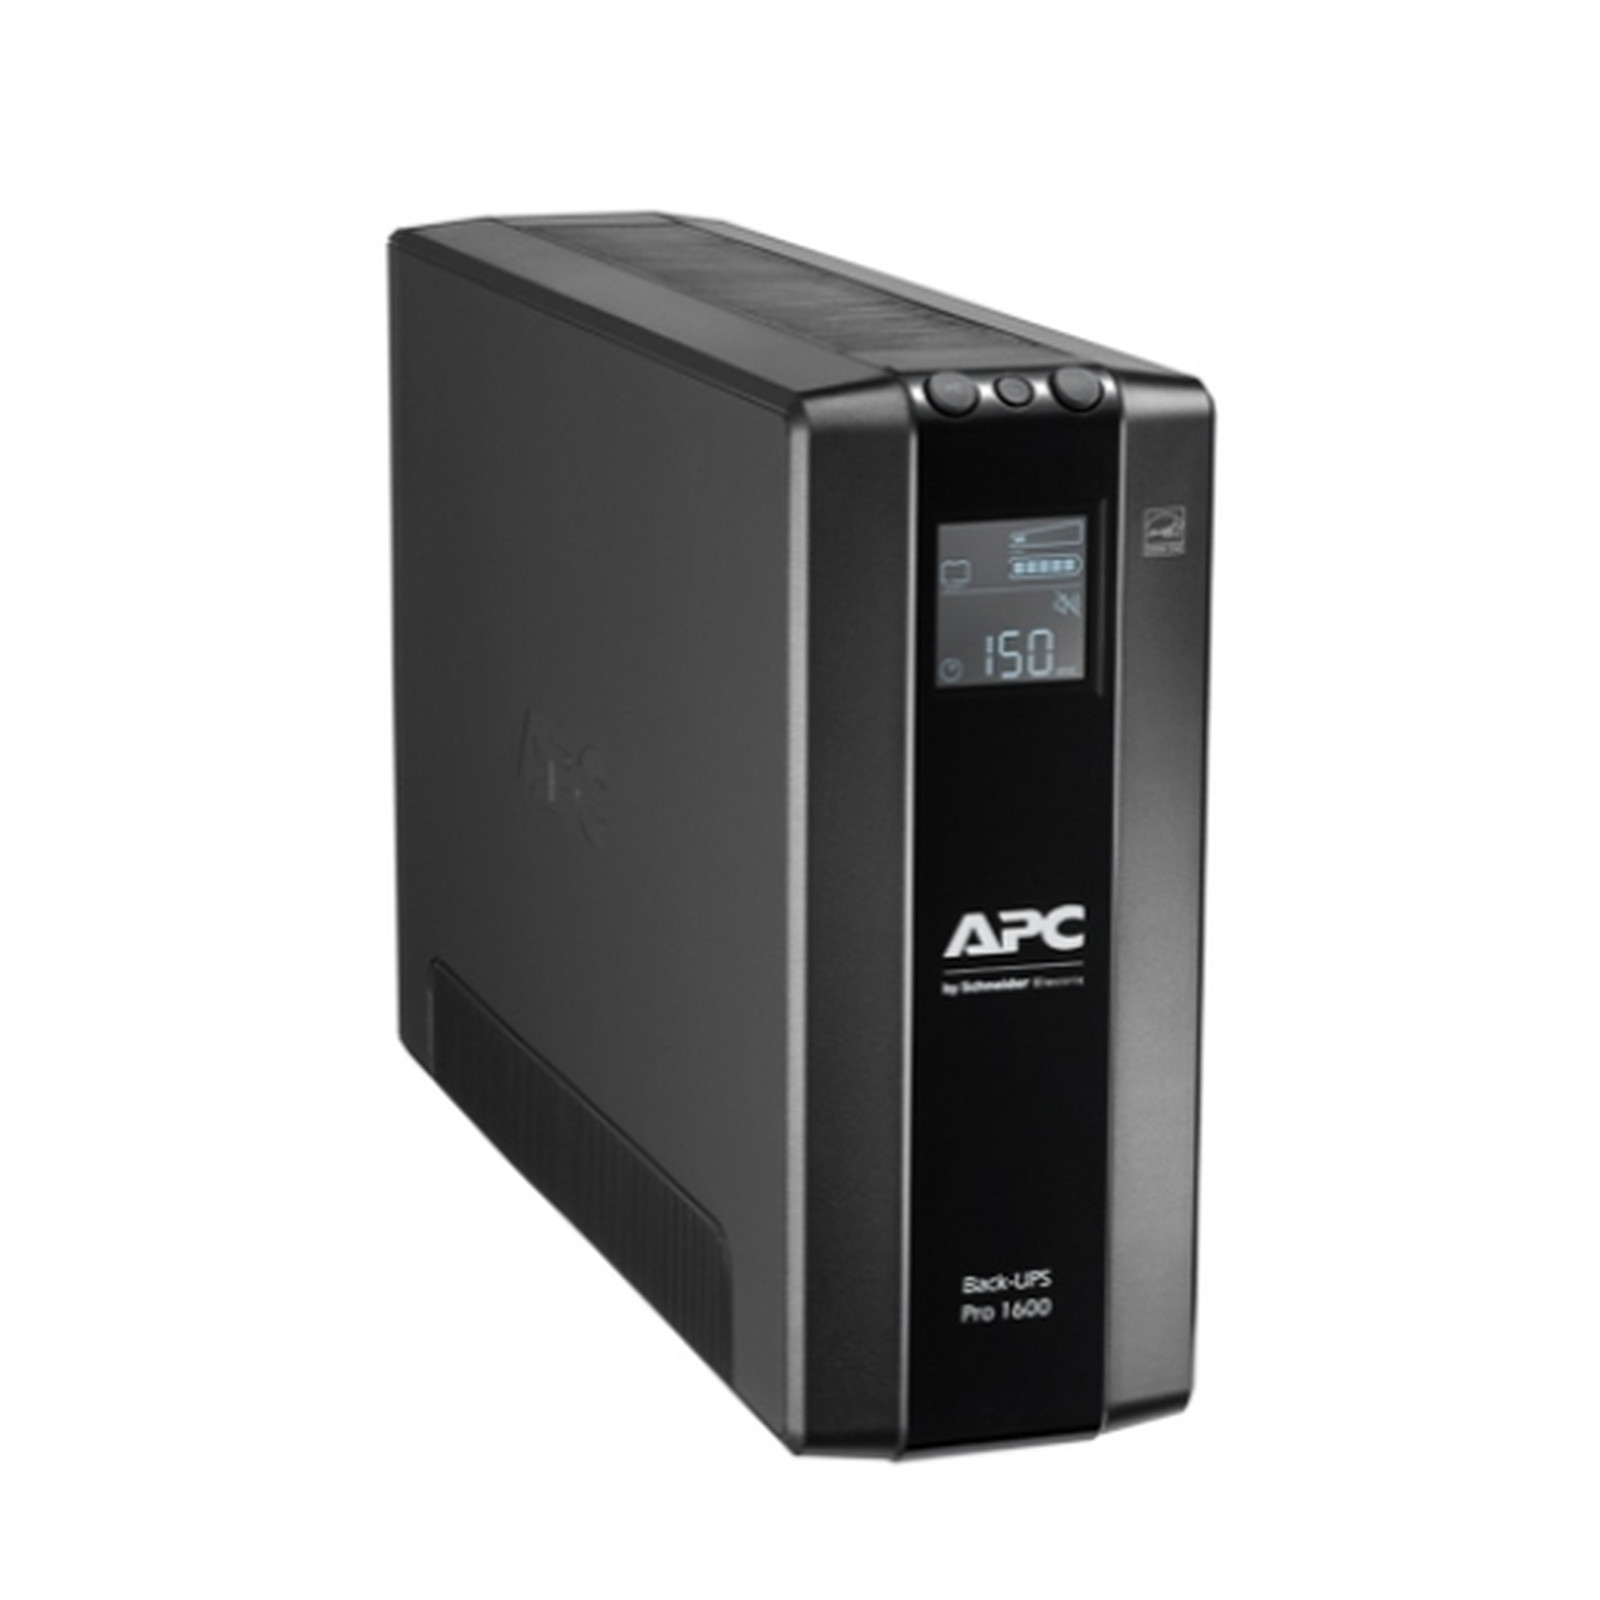 APC Back-UPS Pro BR 1600VA - Onduleur APC